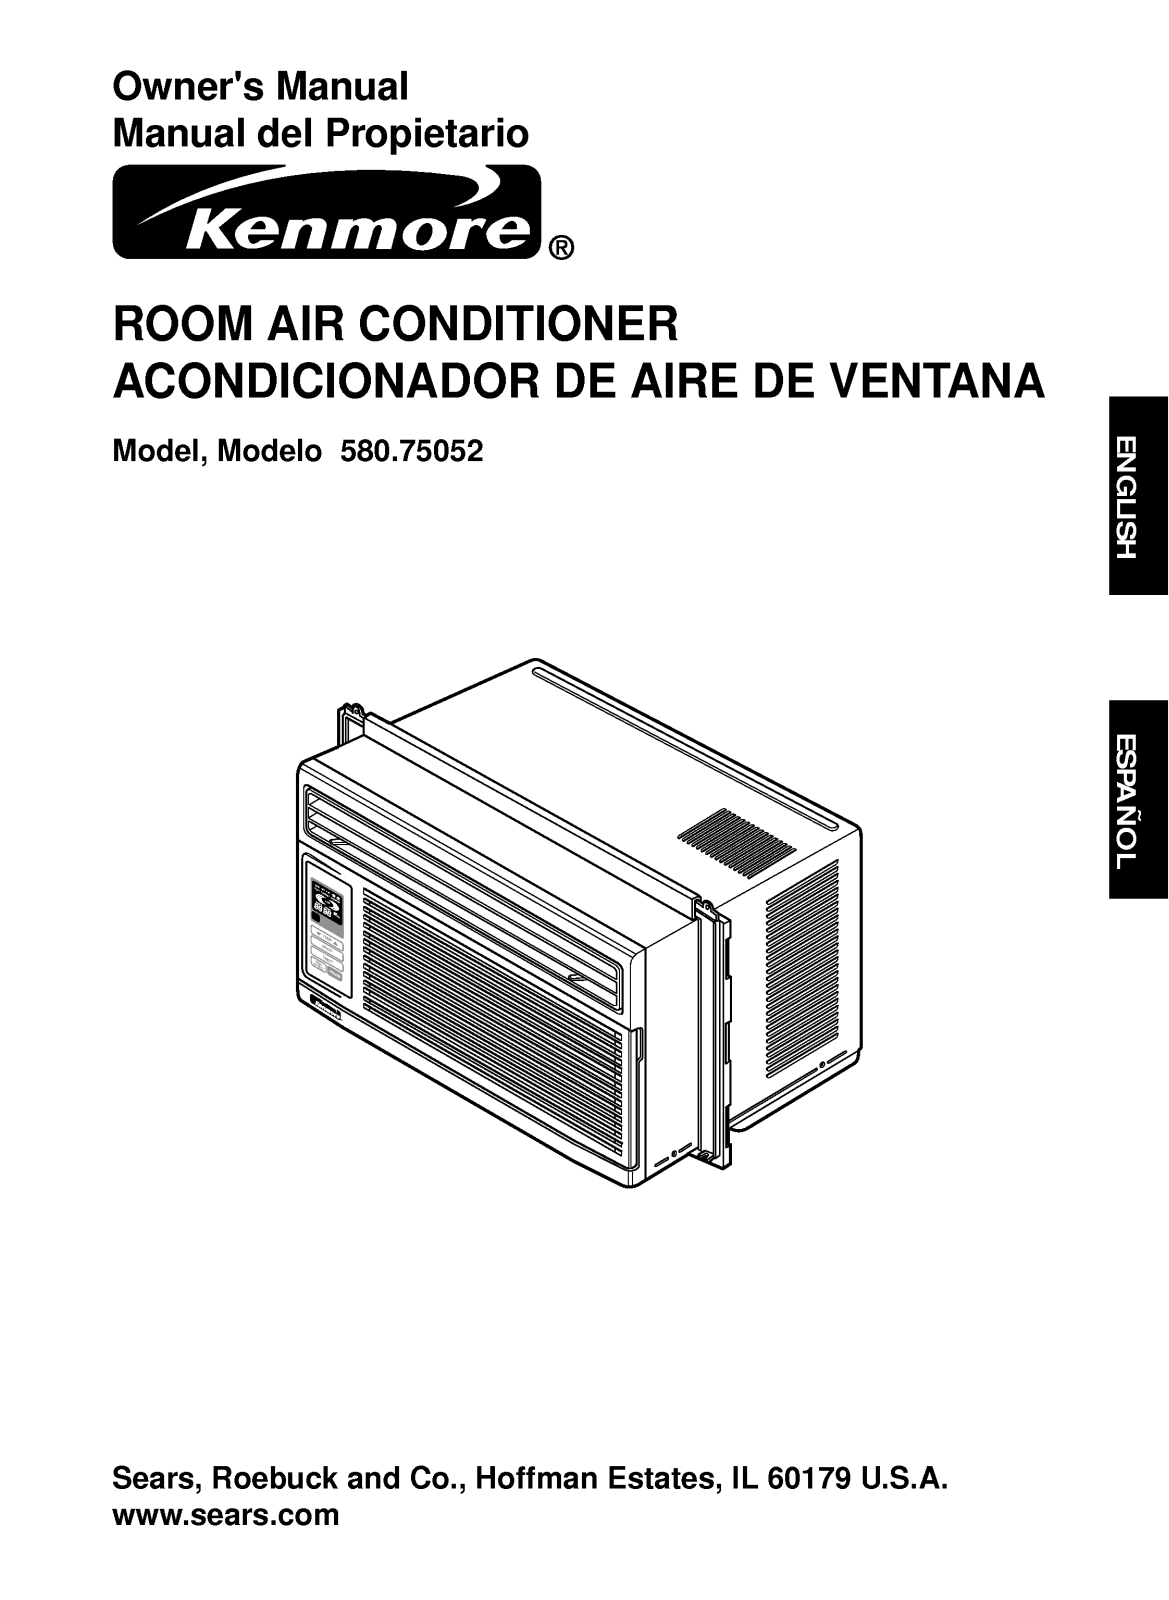 LG 75052 User Manual